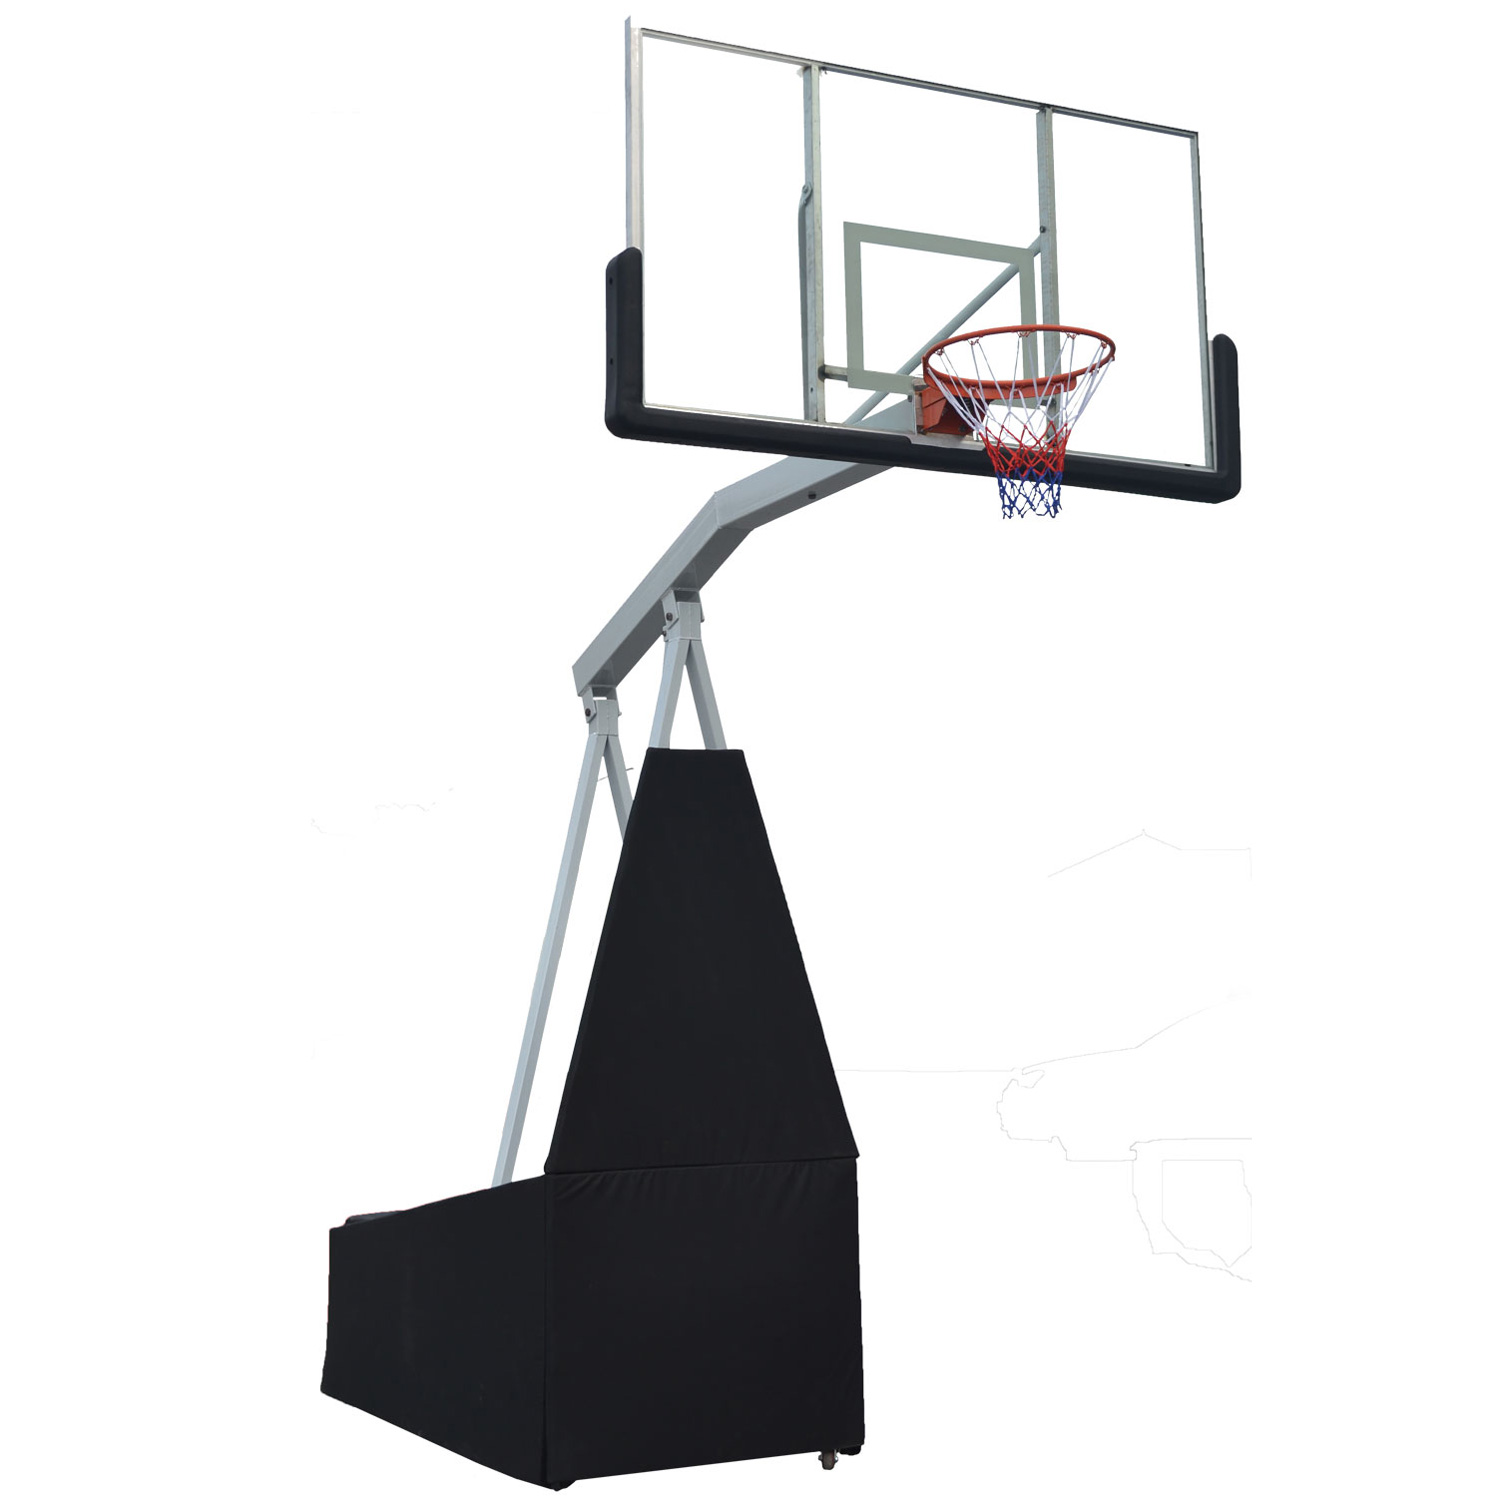 Мобильная баскетбольная стойка клубного уровня DFC STAND72G. Фото N2